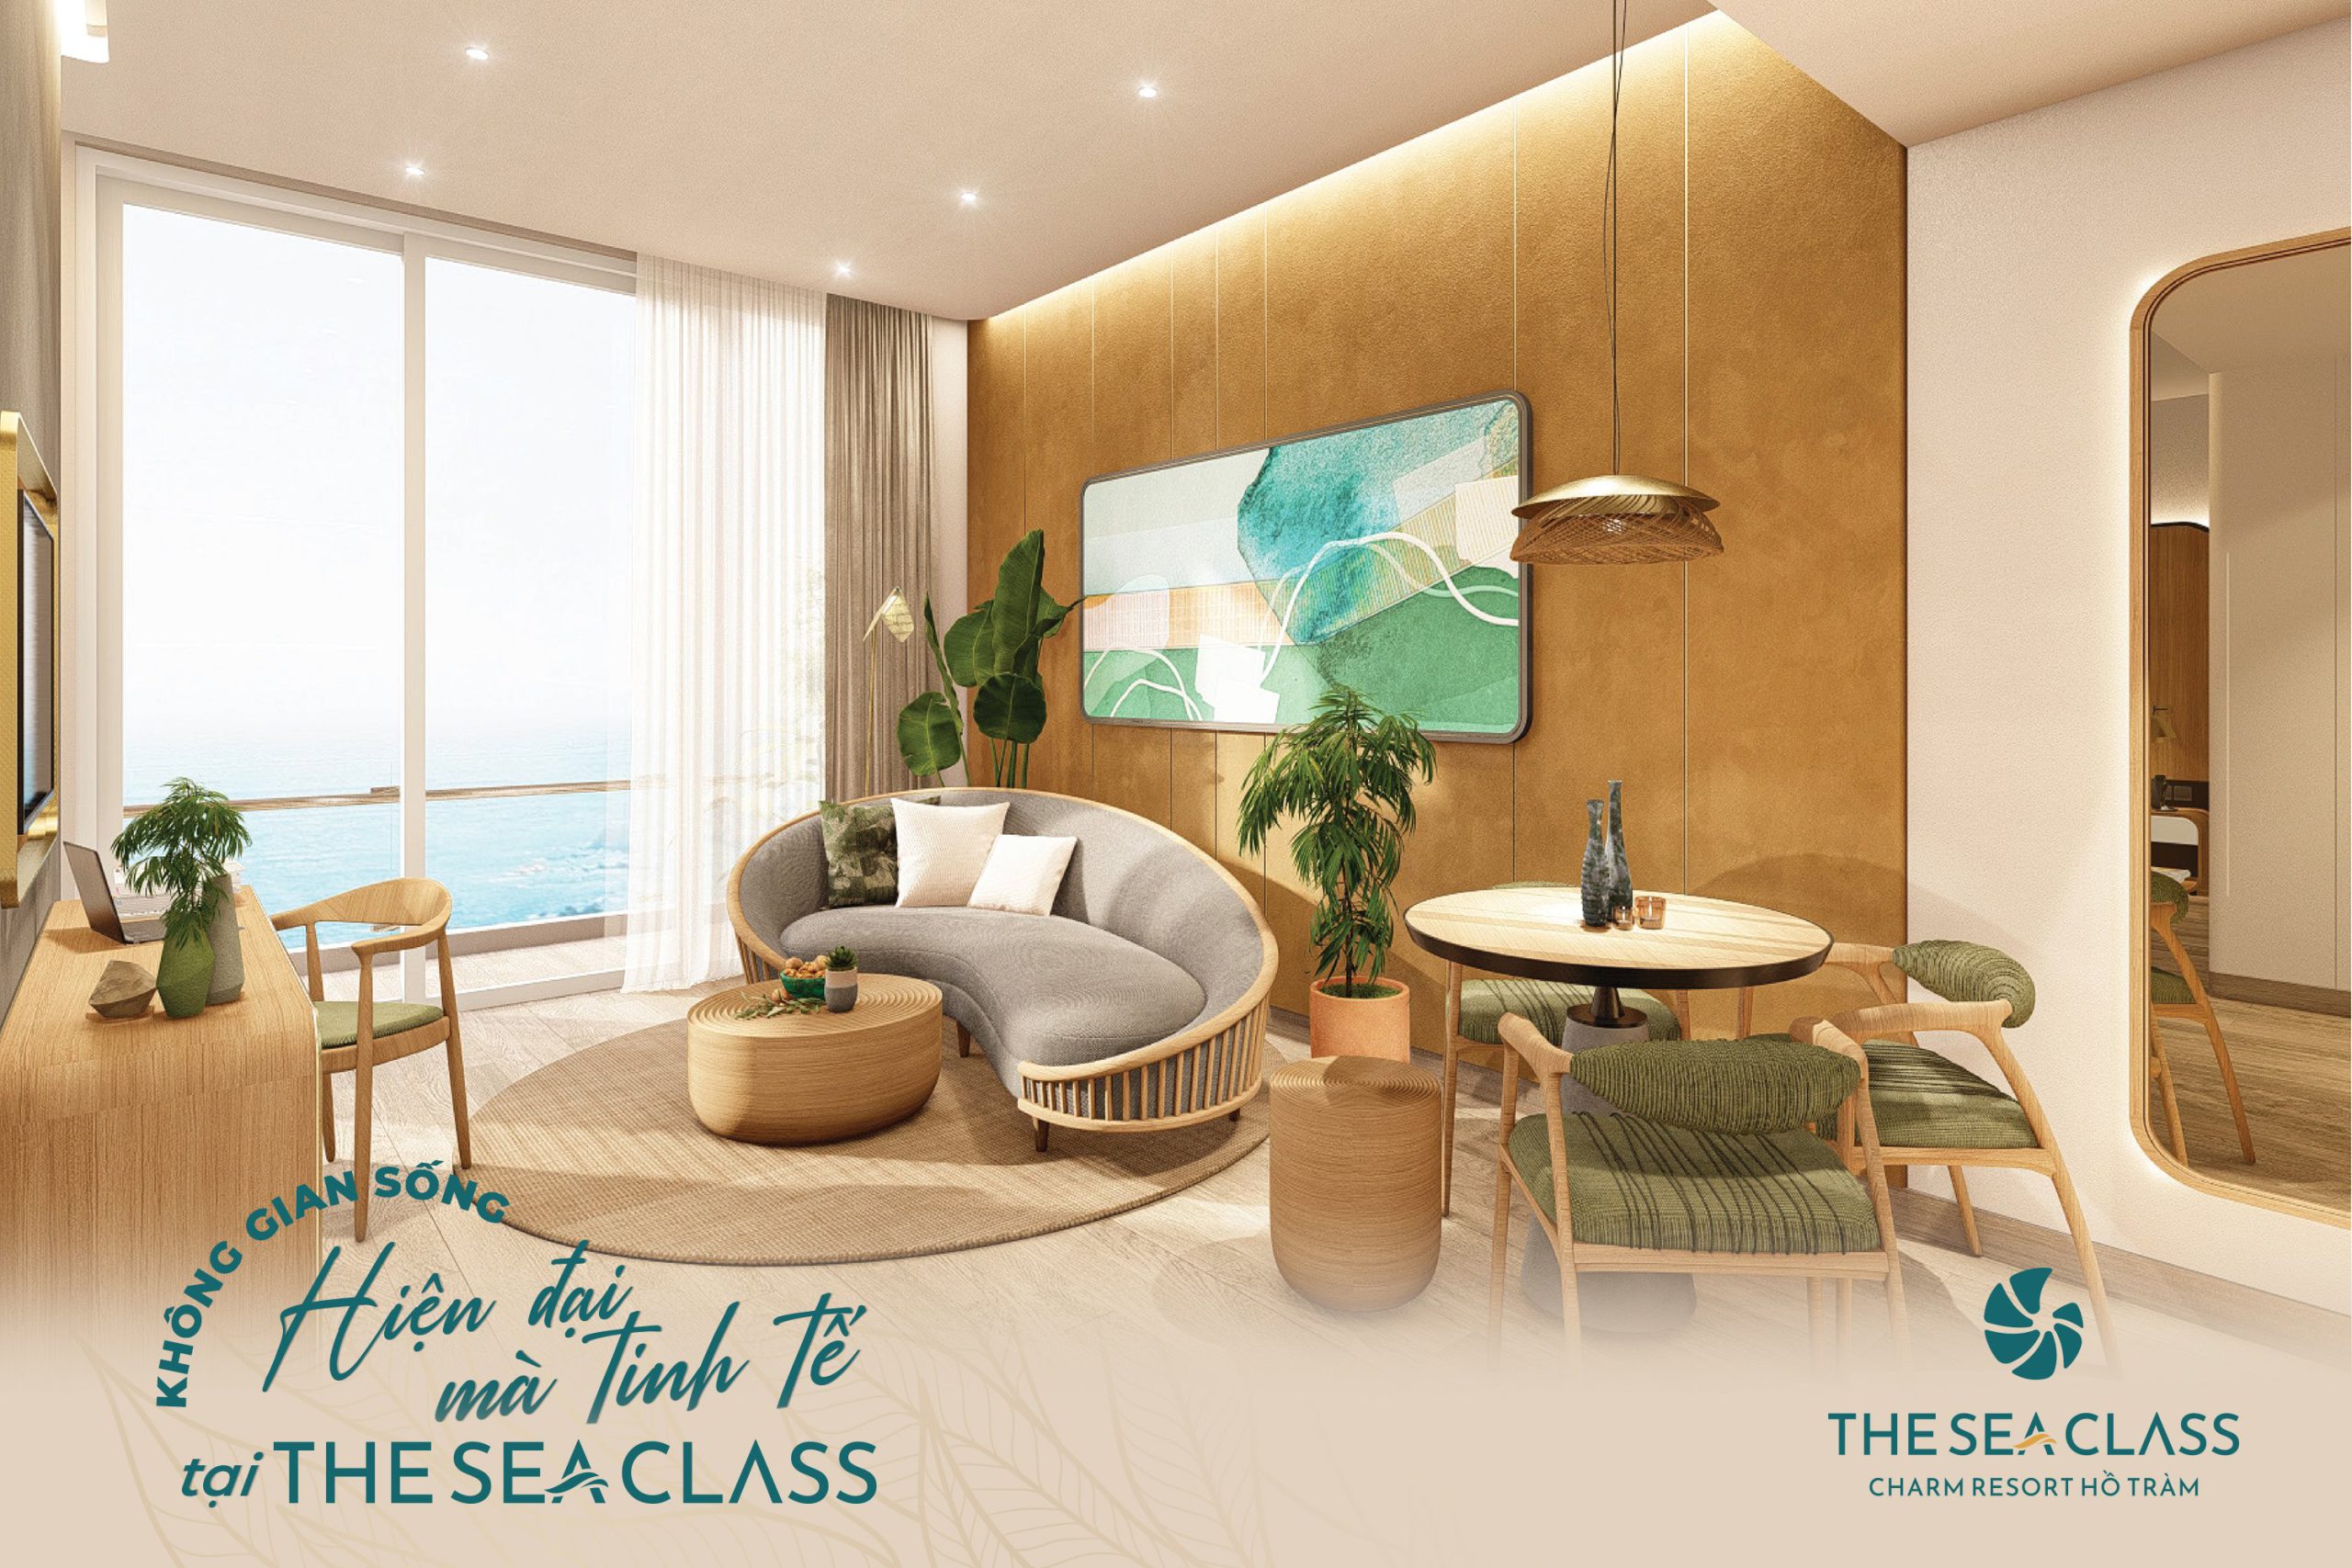 The Sea Class - Charm Resort Hồ Tràm quảng bá hình ảnh và thu hút thêm nhiều du khách trong tương lai.